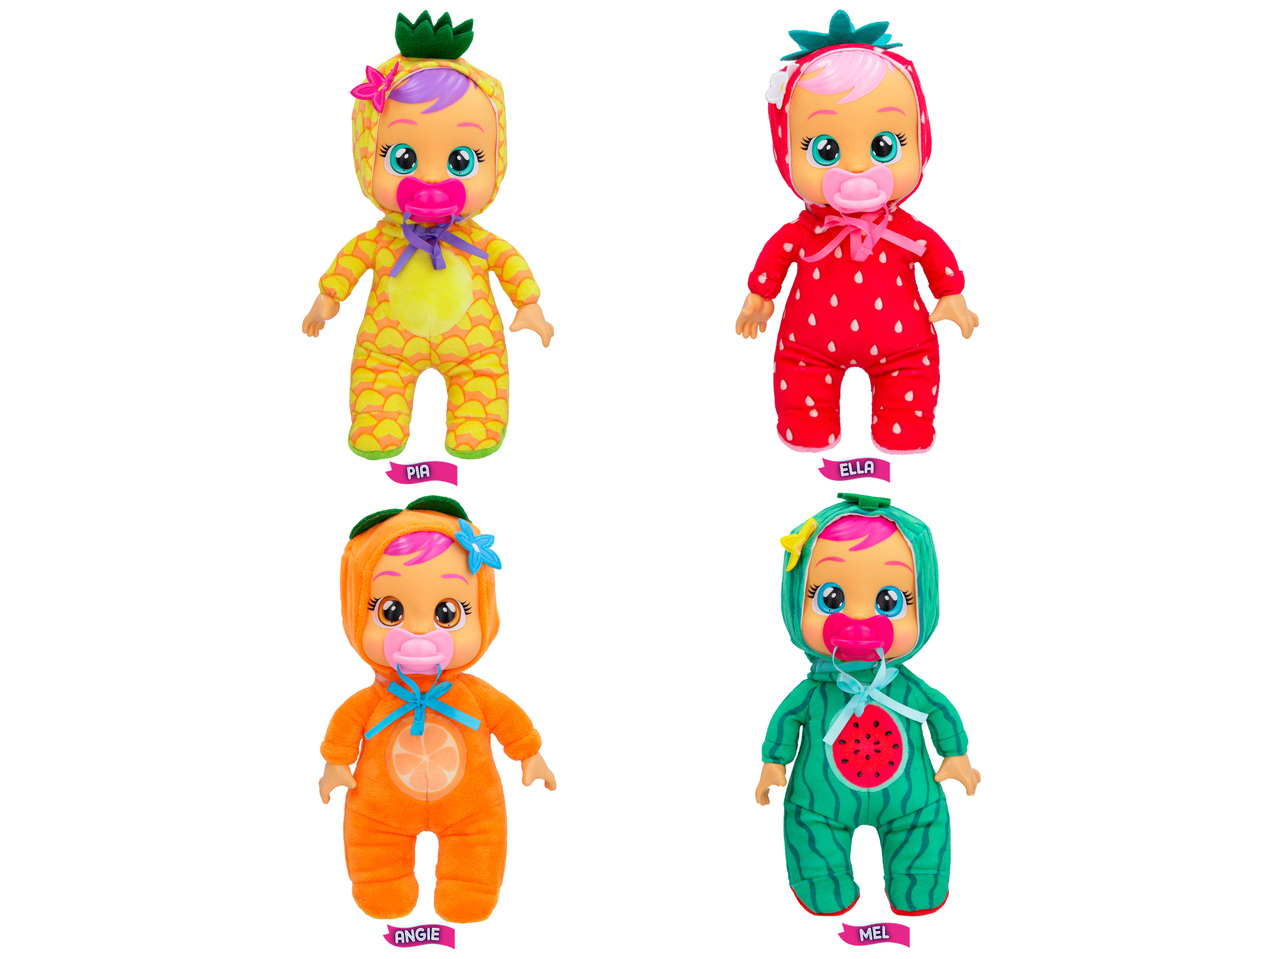 Płacząca laleczka Cry Babies - seria Tiny Cuddles , cena 59,9 PLN 
Płacząca ...